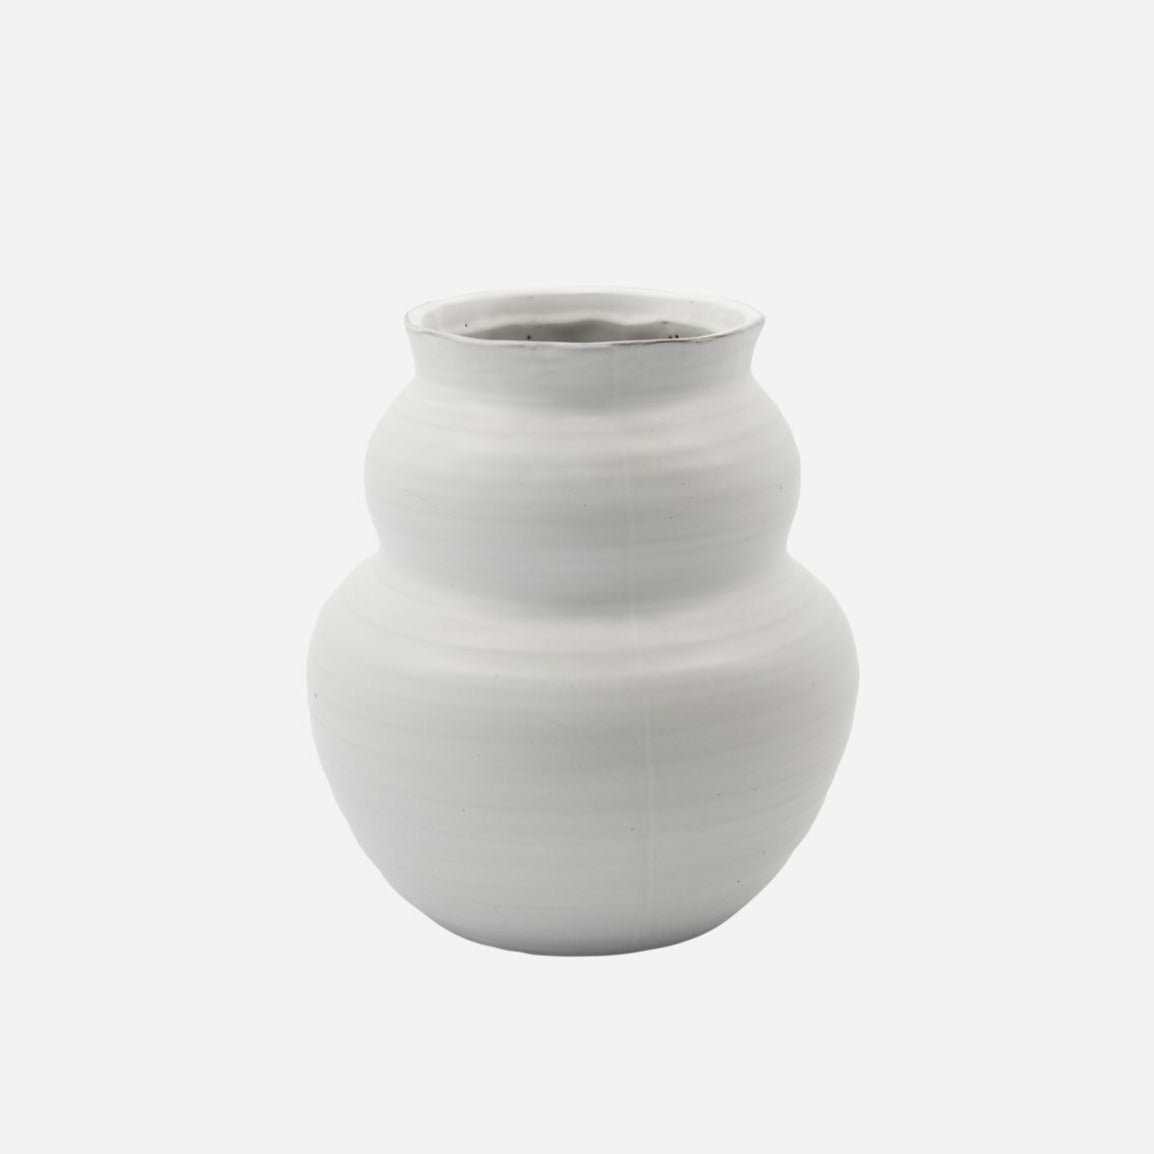 vase ceramic glazed white beautiful shape organic soft design